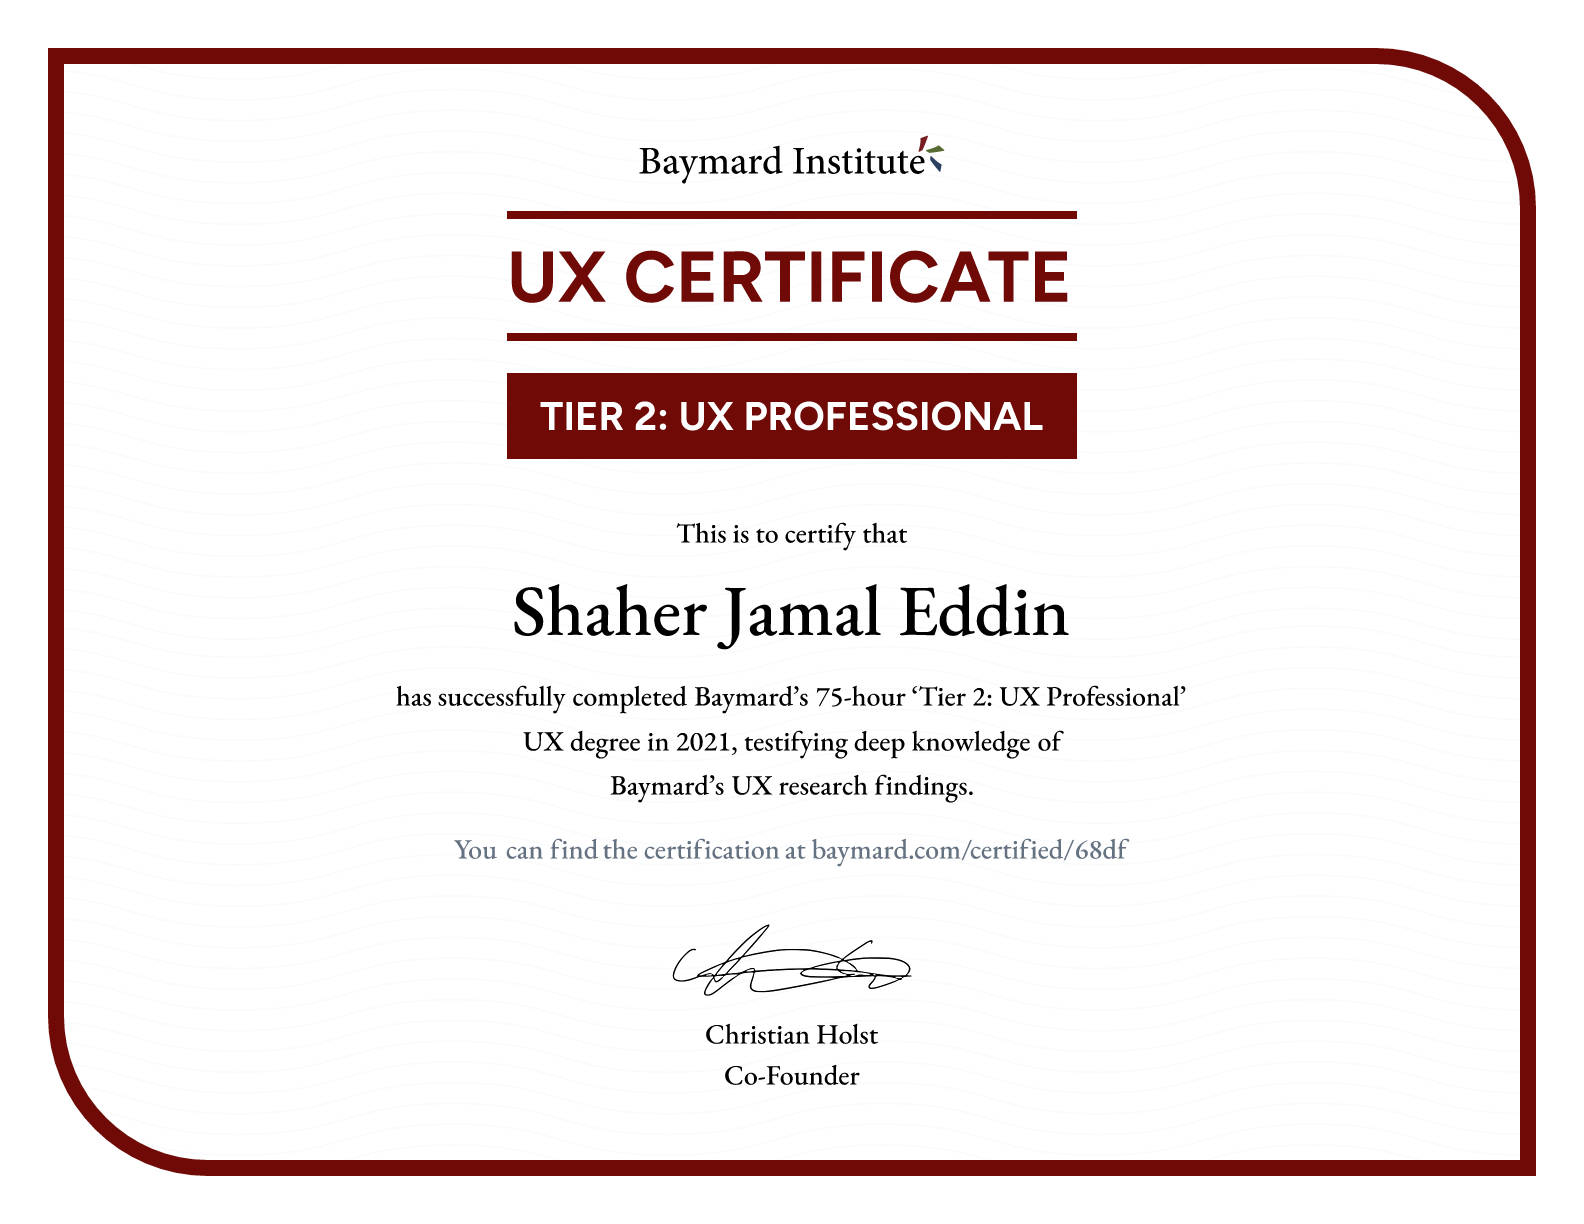 Shaher Jamal Eddin’s certificate